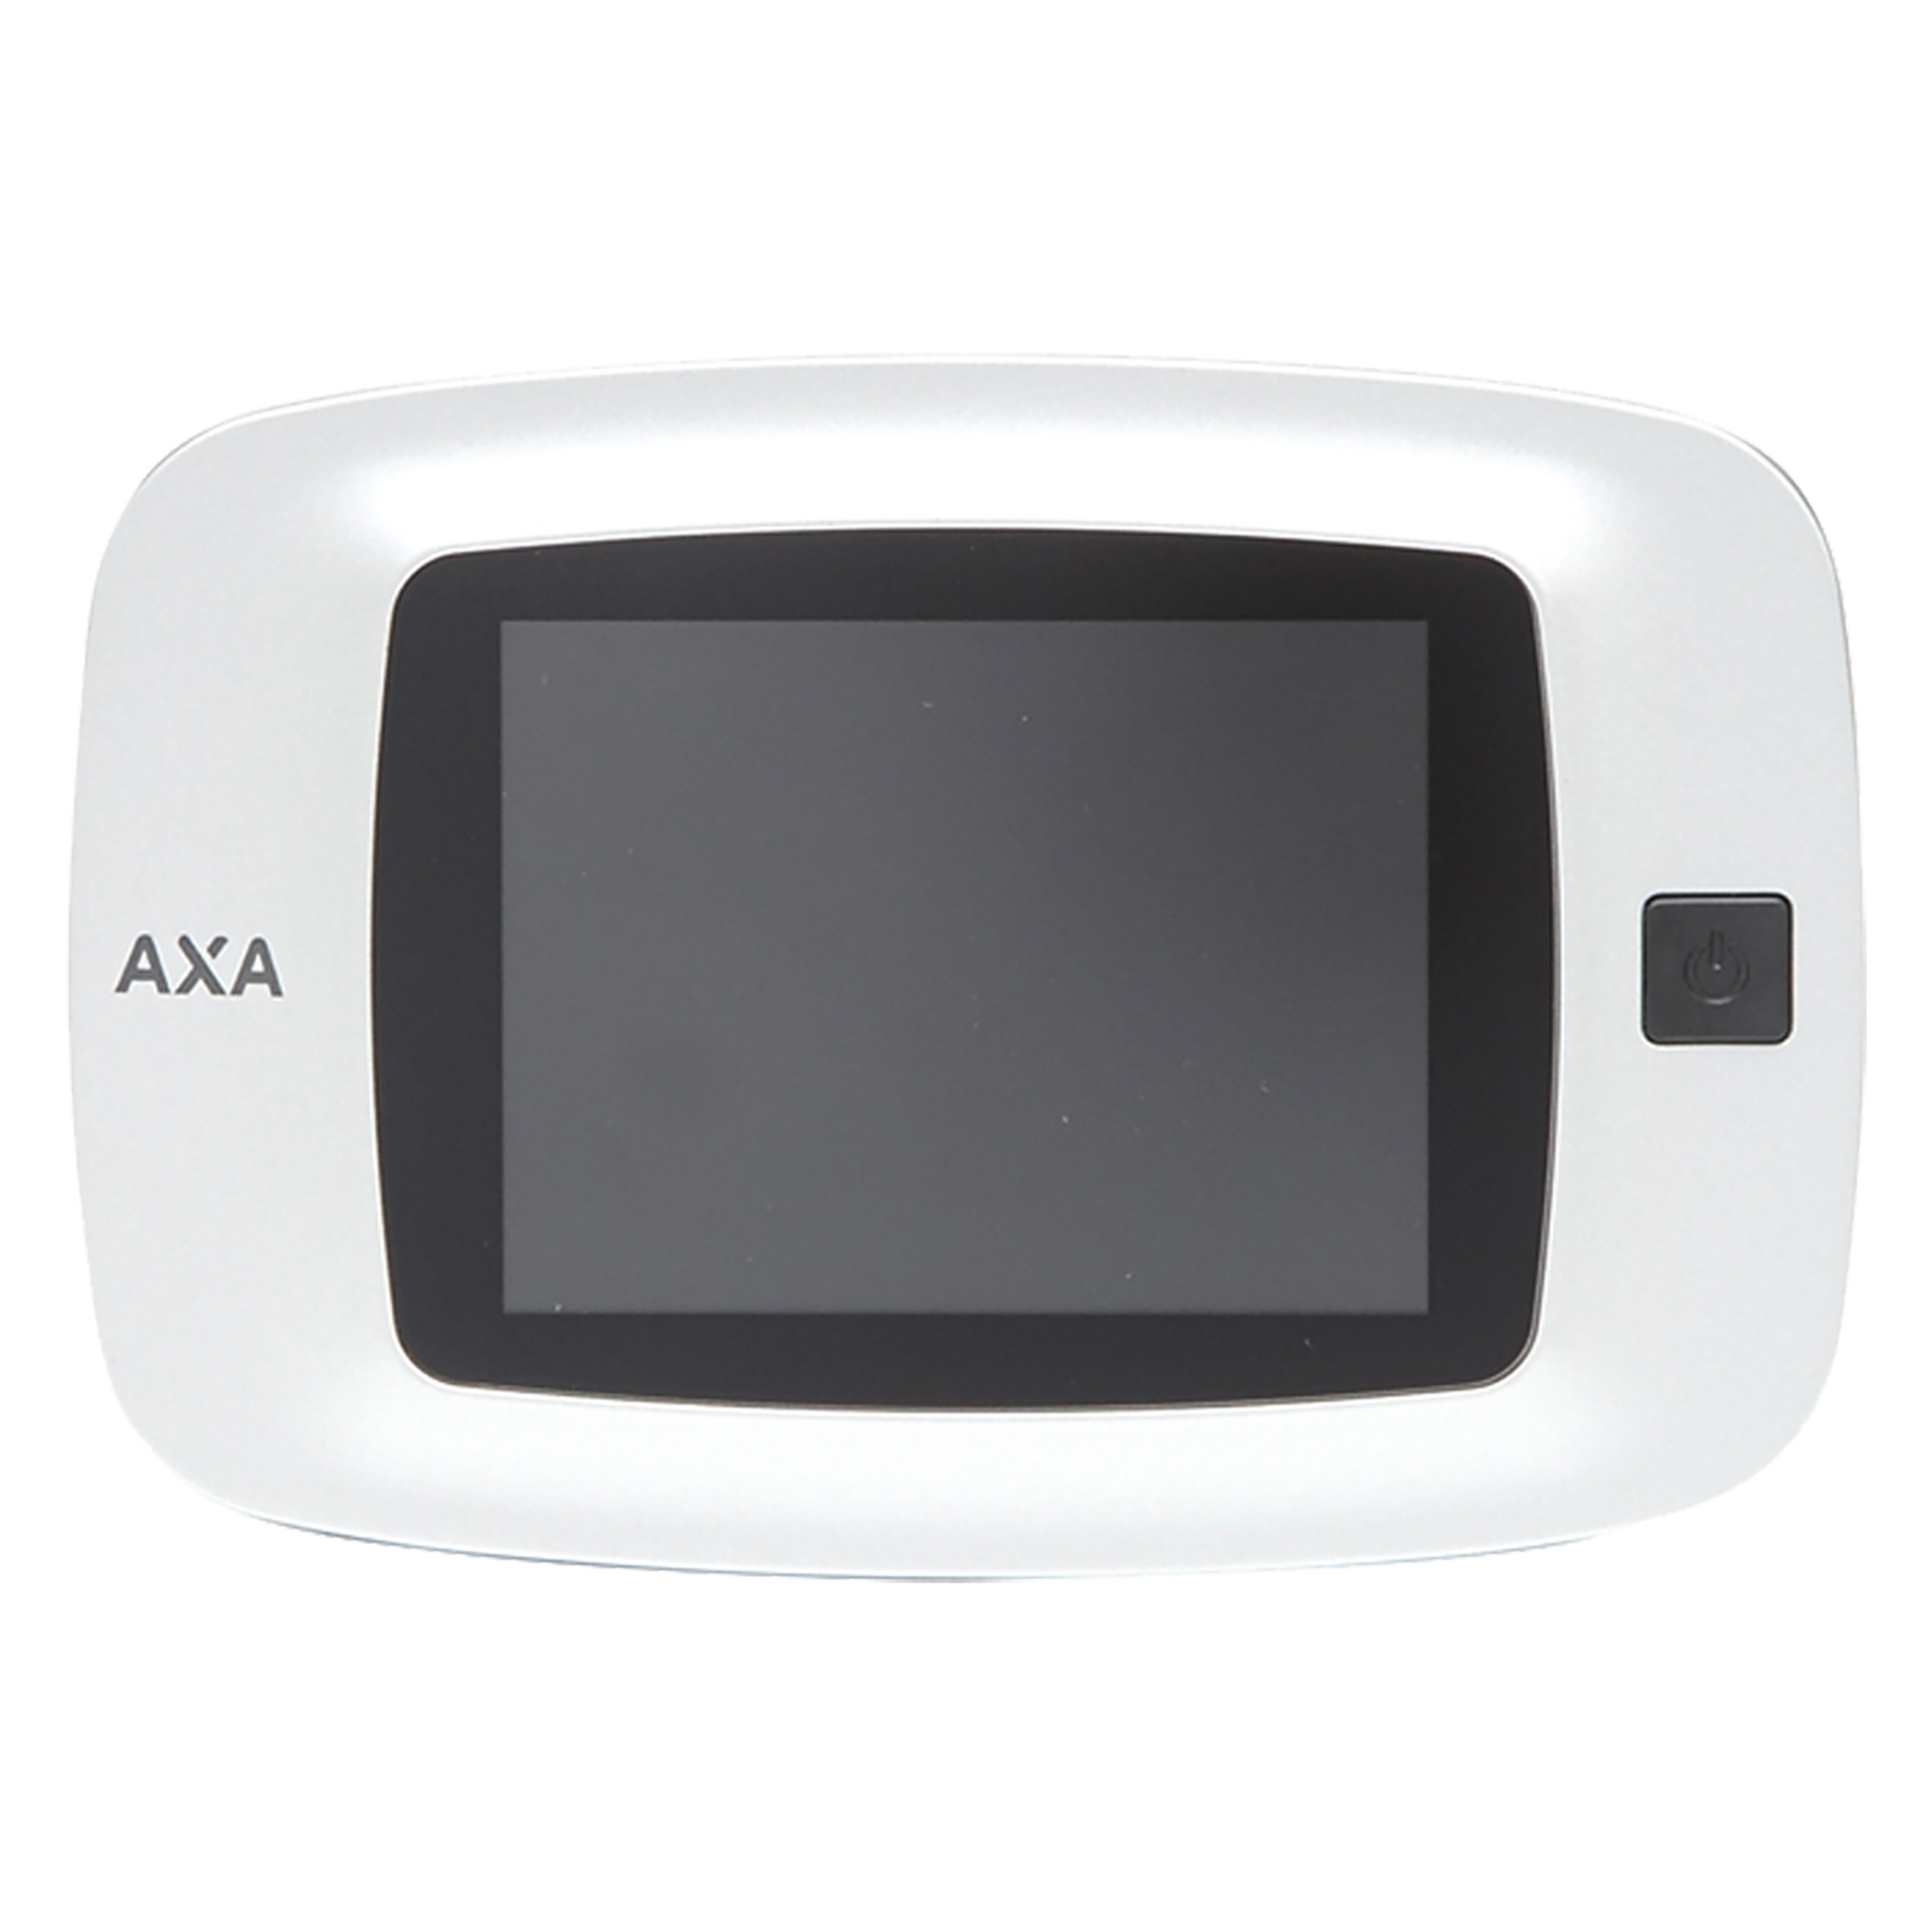 44.021.38 Axa  digitale deurspion type 7800 - silverline - voor buitendeuren - 8 cm - wit